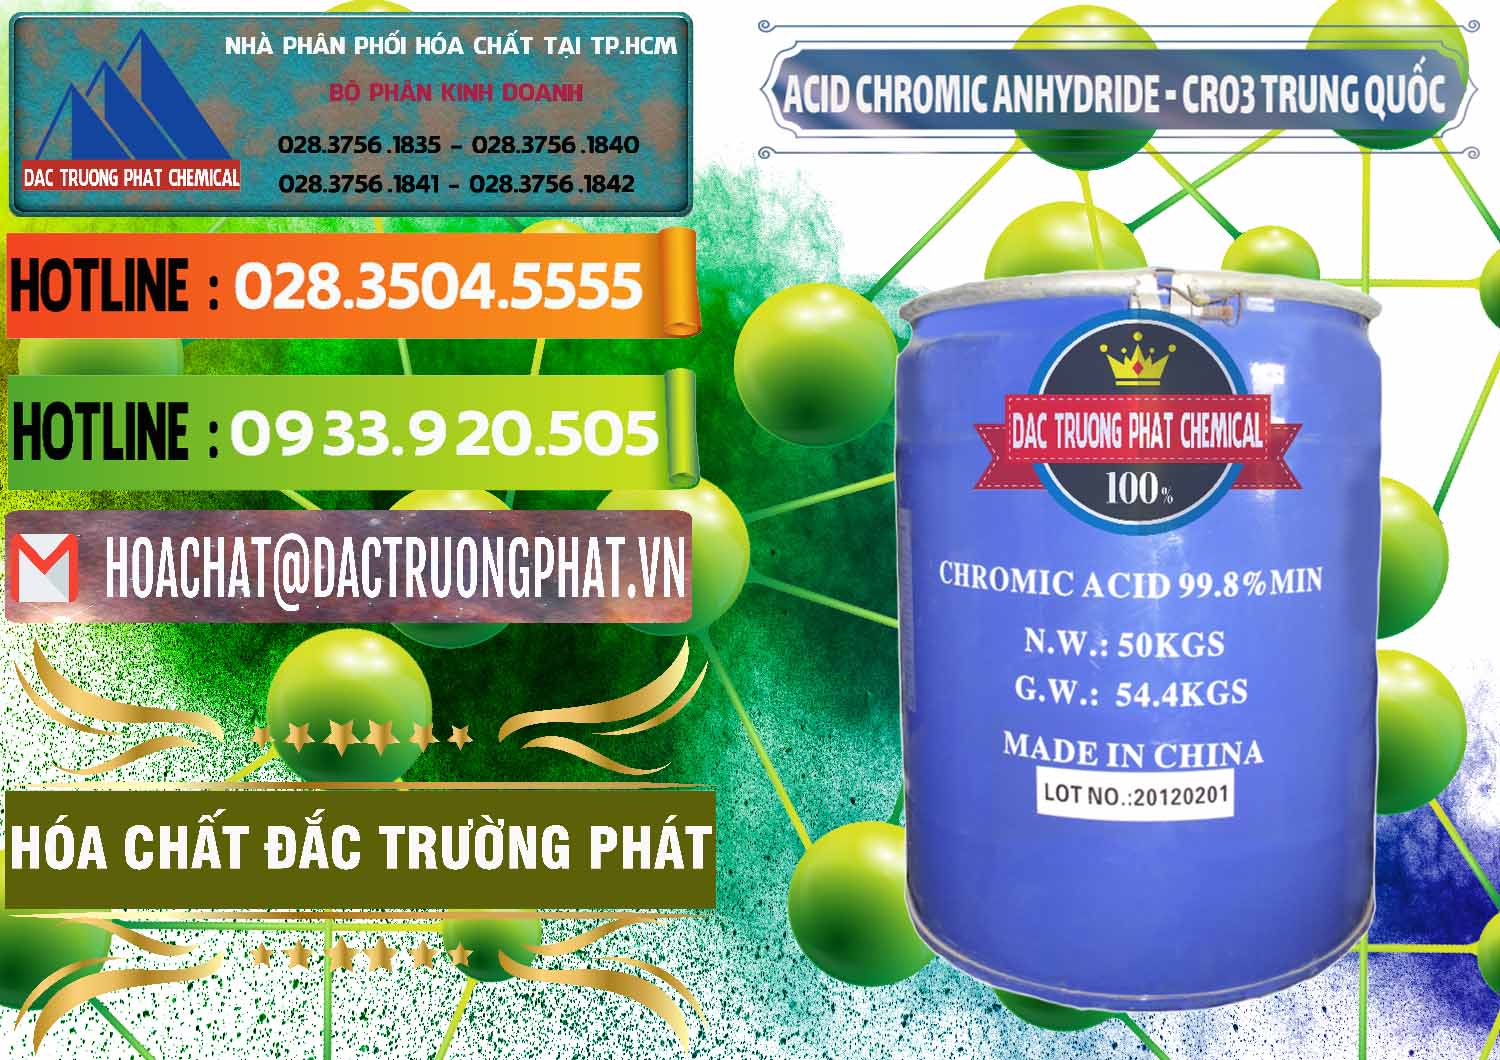 Bán _ cung ứng Acid Chromic Anhydride - Cromic CRO3 Trung Quốc China - 0007 - Cty cung cấp & phân phối hóa chất tại TP.HCM - cungcaphoachat.com.vn